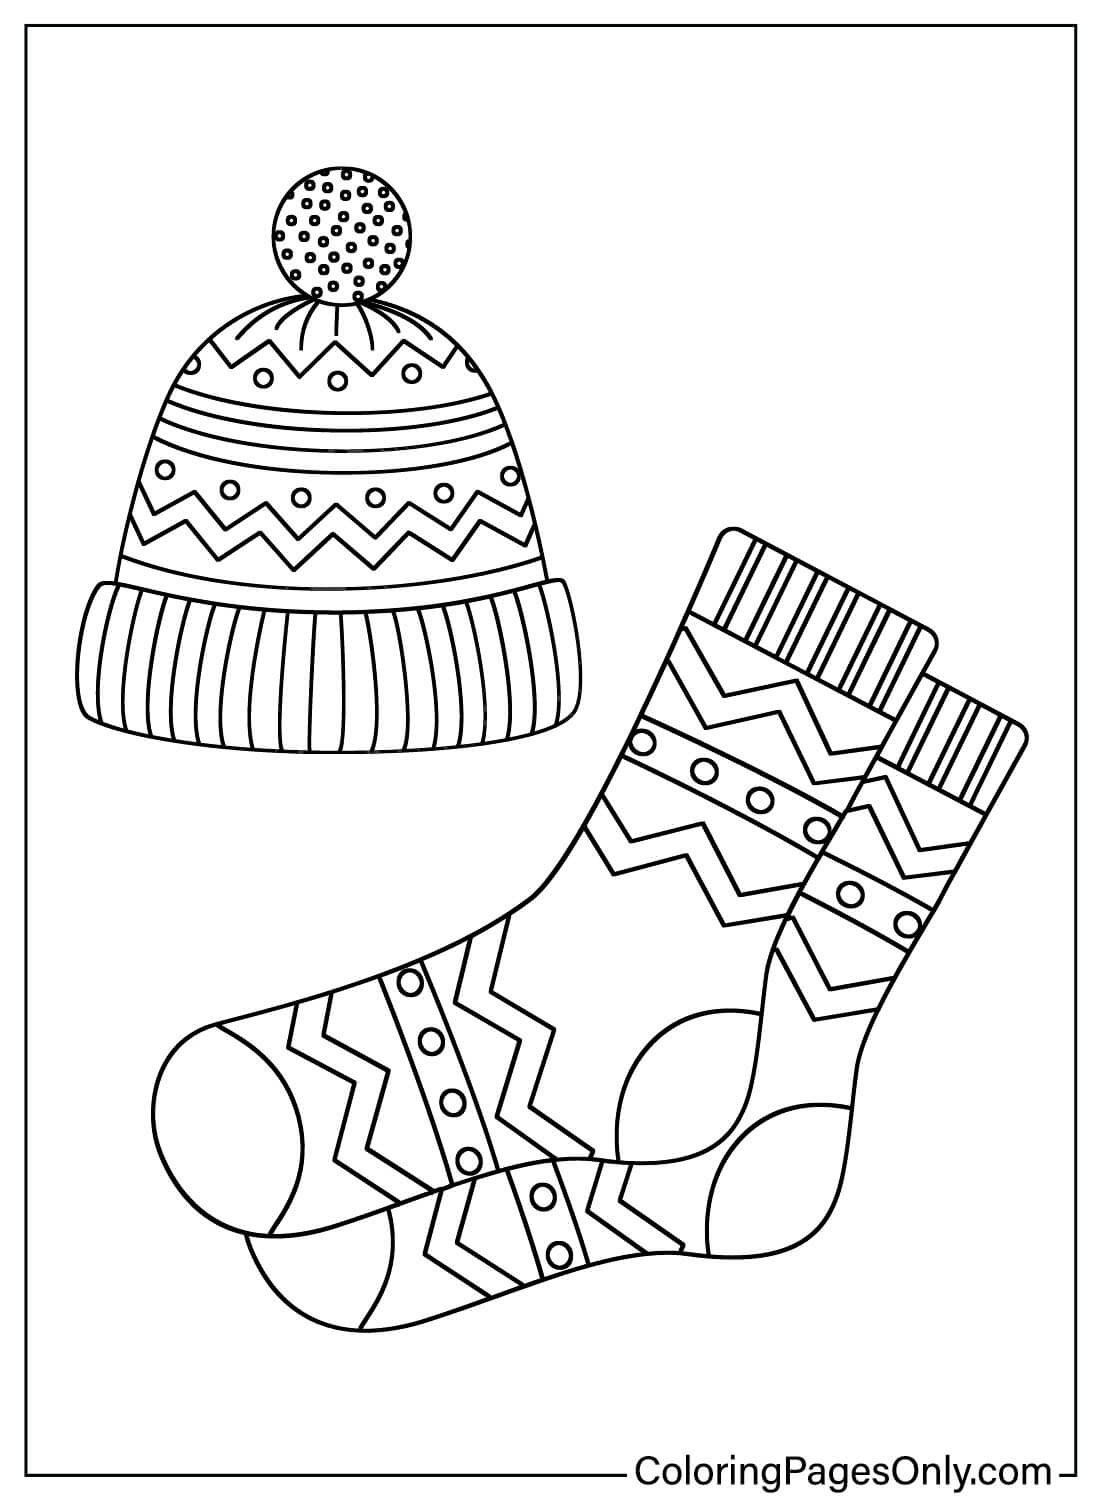 Coloriage de bonnet tricoté avec des chaussettes tricotées de chaussettes